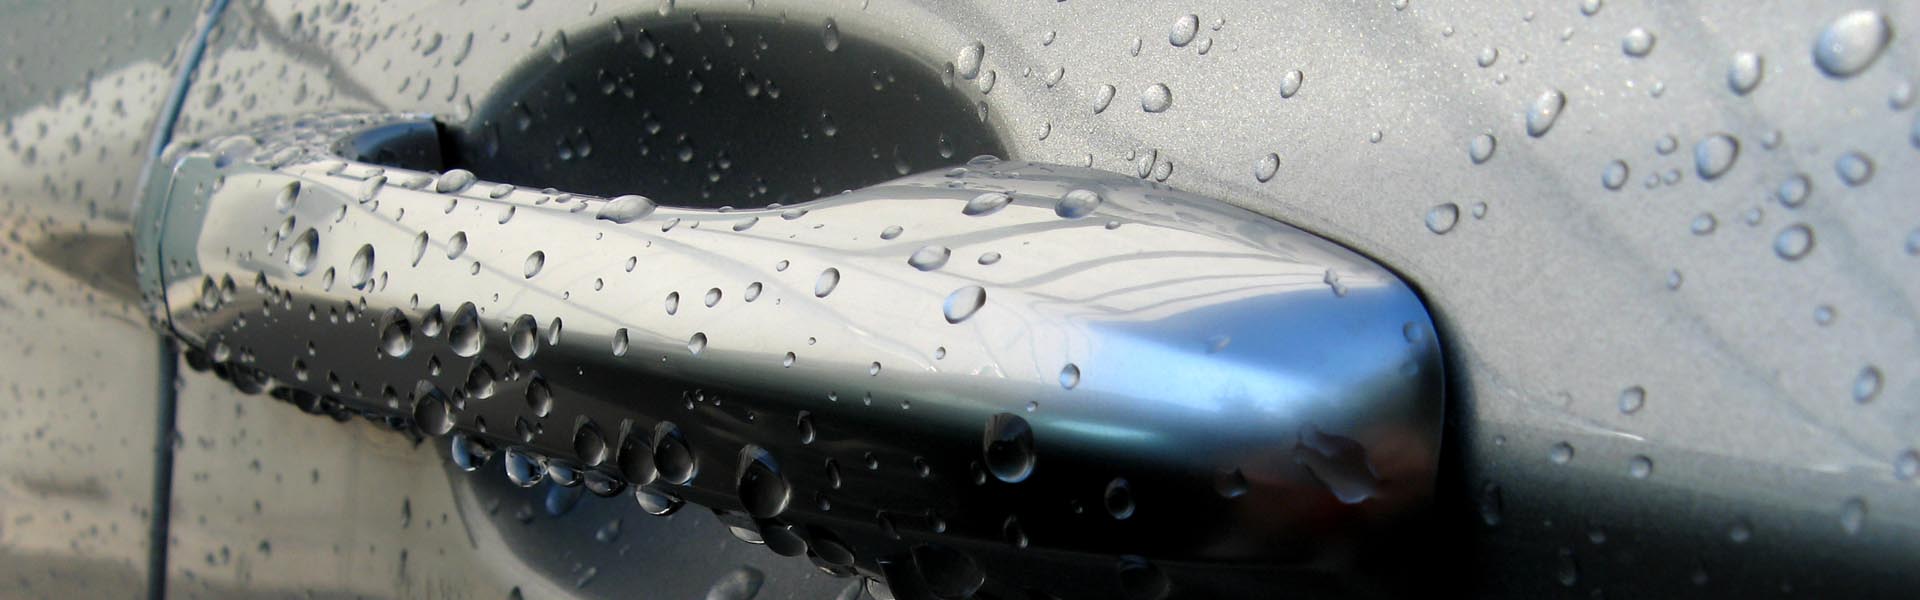 Auto: Türgriff mit Wassertrropfen, Beschichtung im Automobilindustrie